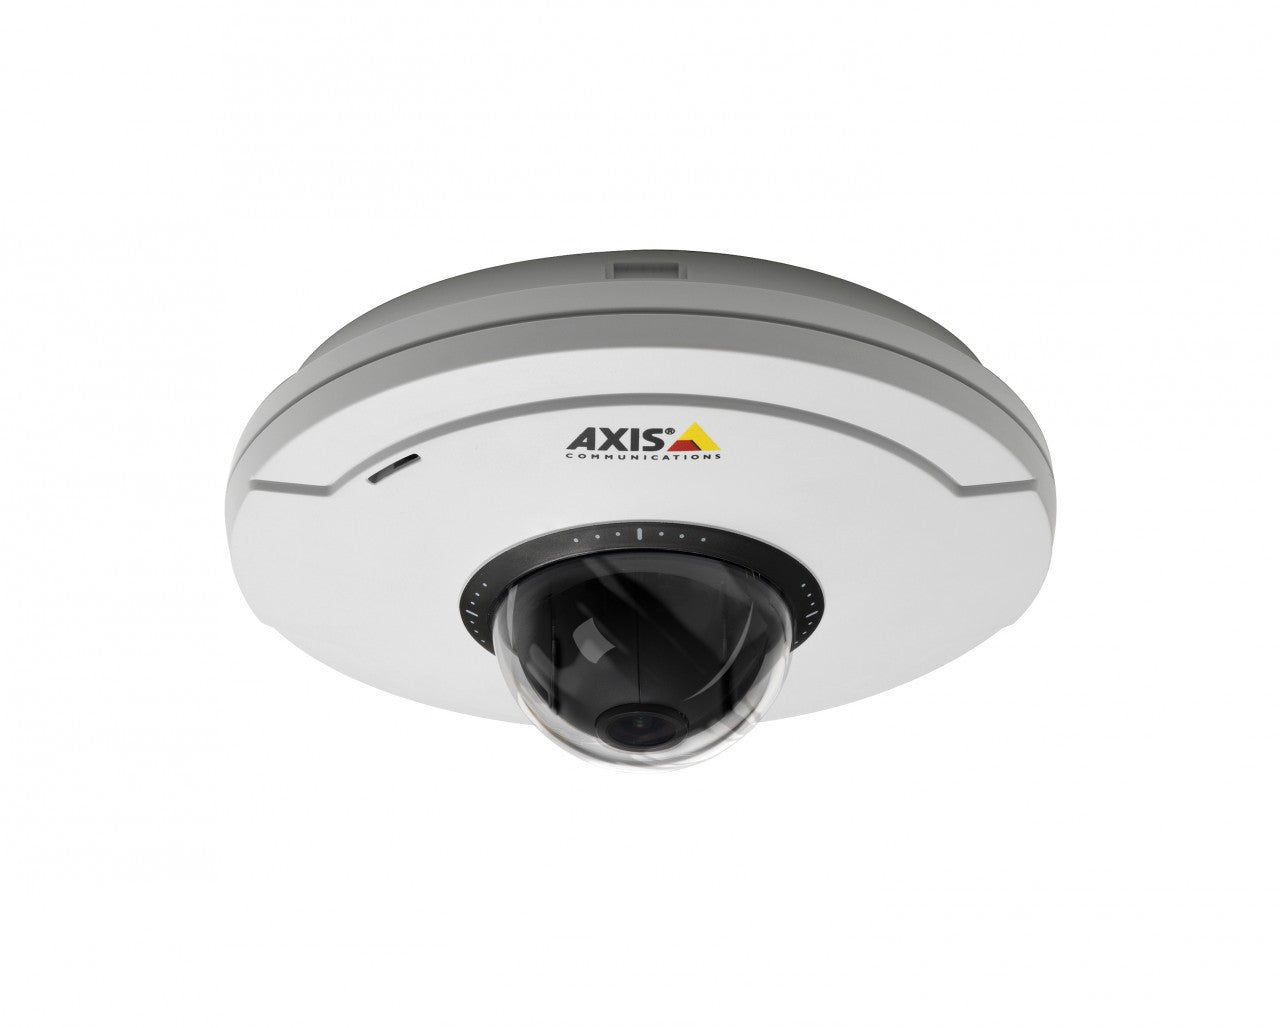 AXIS M5013 (0398-001) Mini PTZ Dome Network Camera